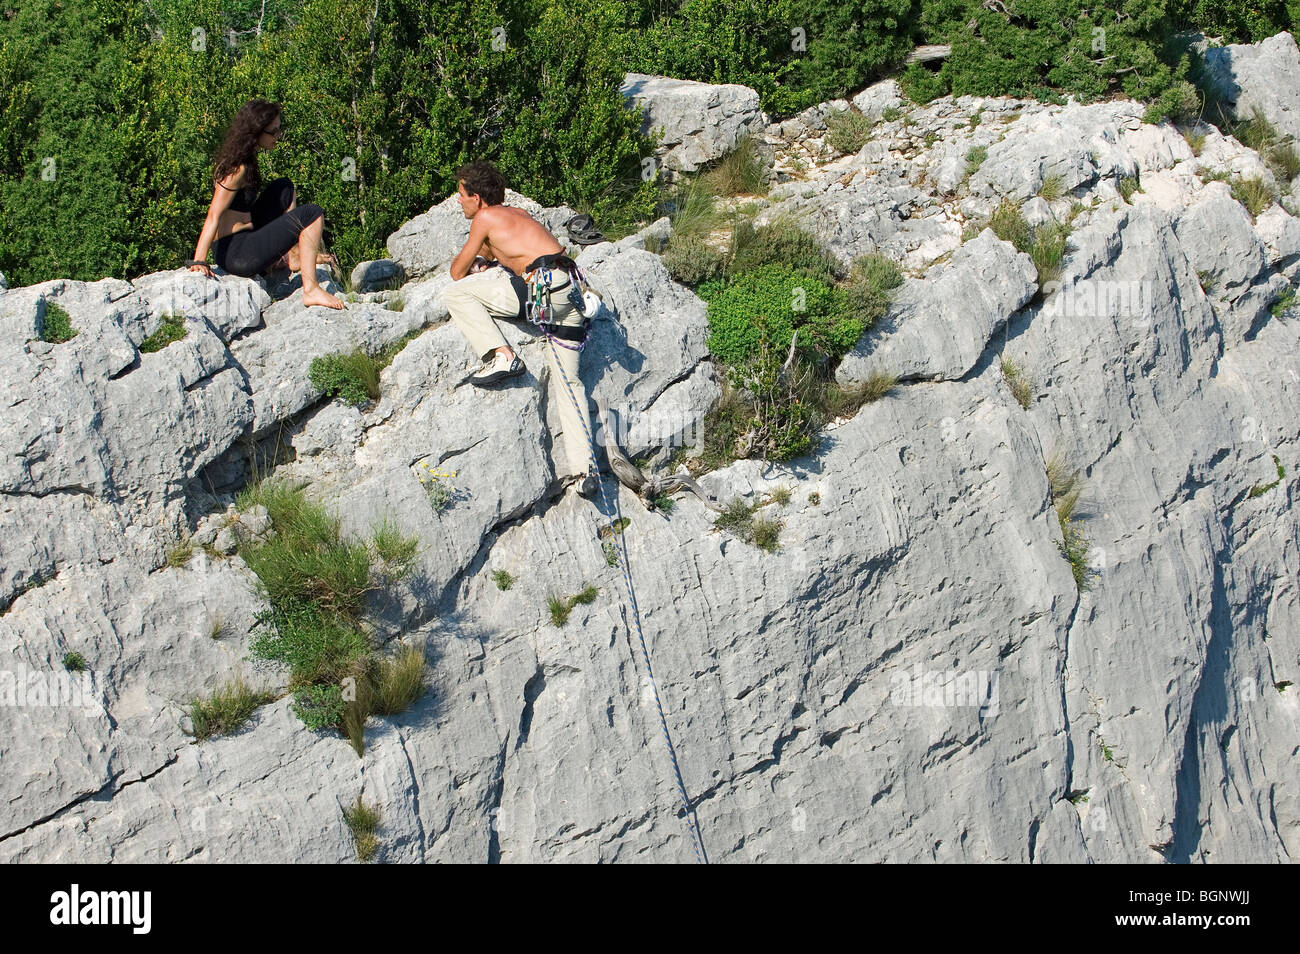 L'escalade grimpeurs de falaises calcaires abruptes dans le canyon Gorges du Verdon / Gorges du Verdon, Provence, France Banque D'Images